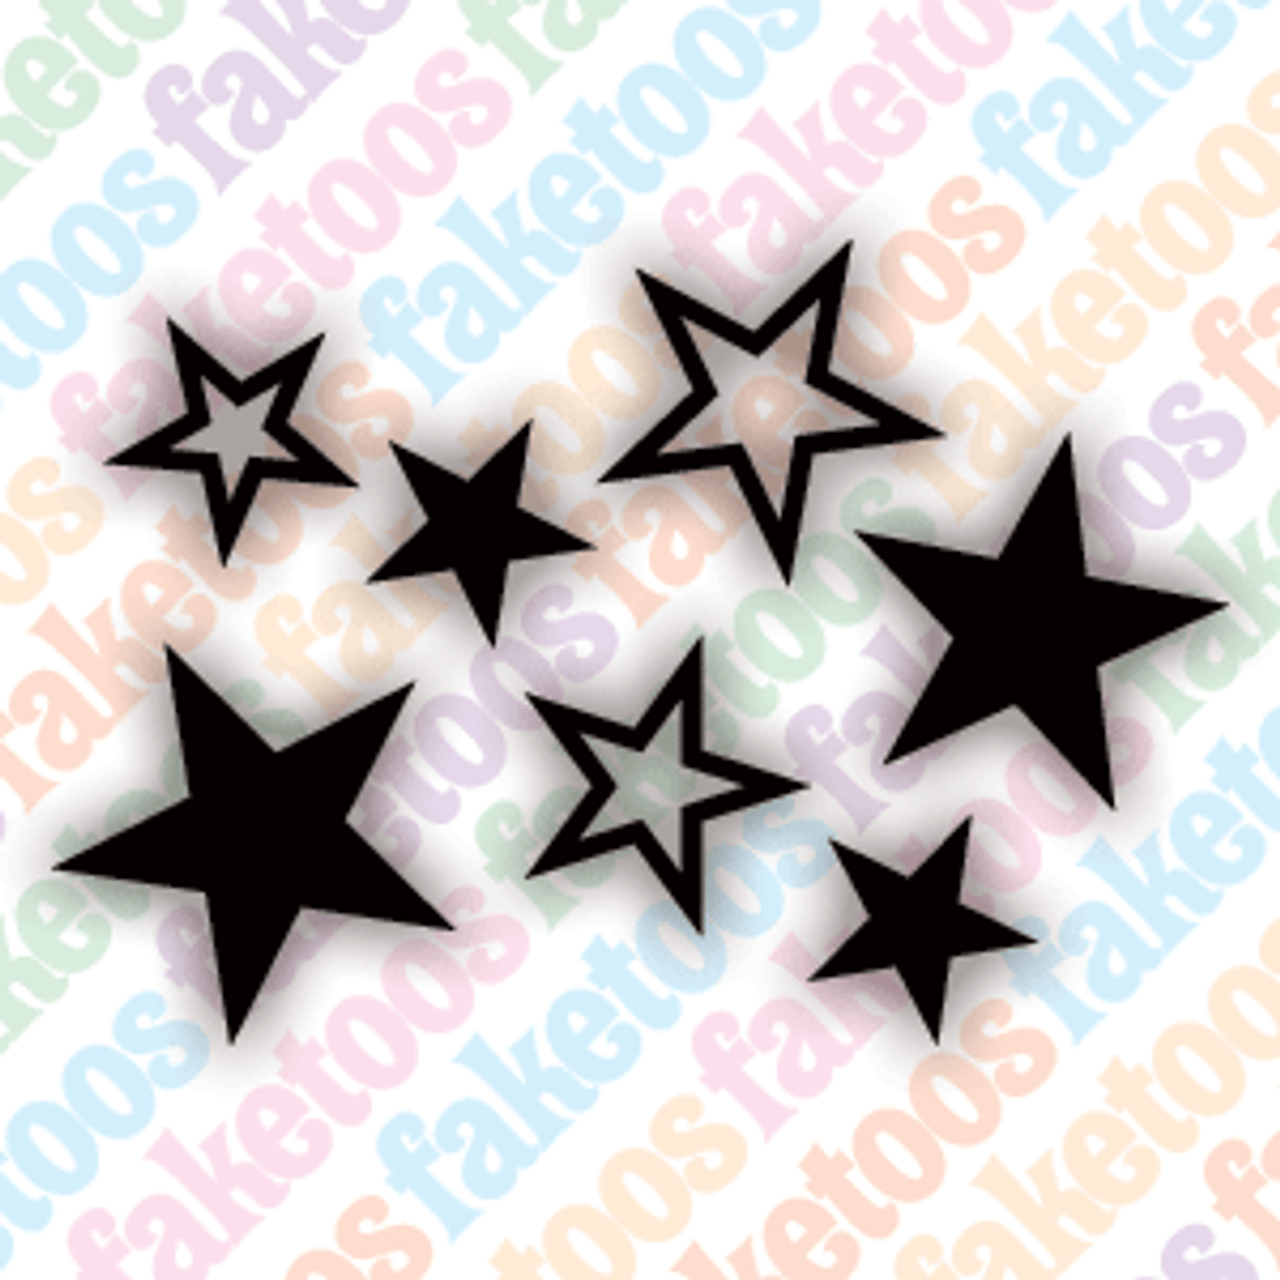 Glimmer Body Art Glitter Tattoo Stencils - Star 2 (5/pack) – ClownAntics